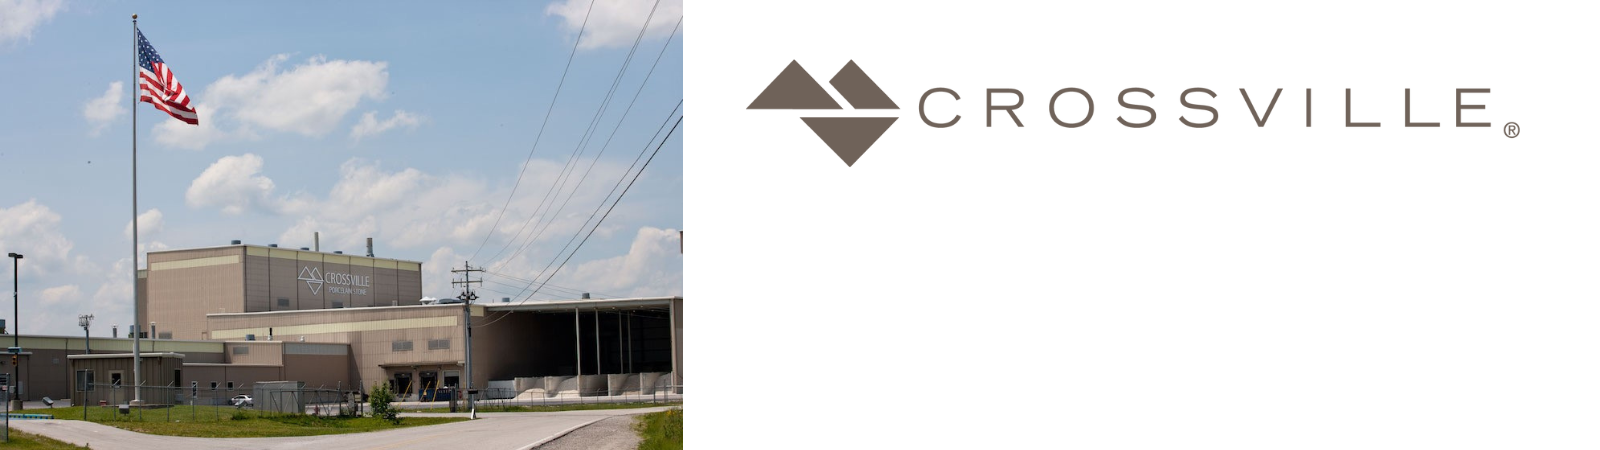 Crossville инвестирует в будущее вместе с SACMI